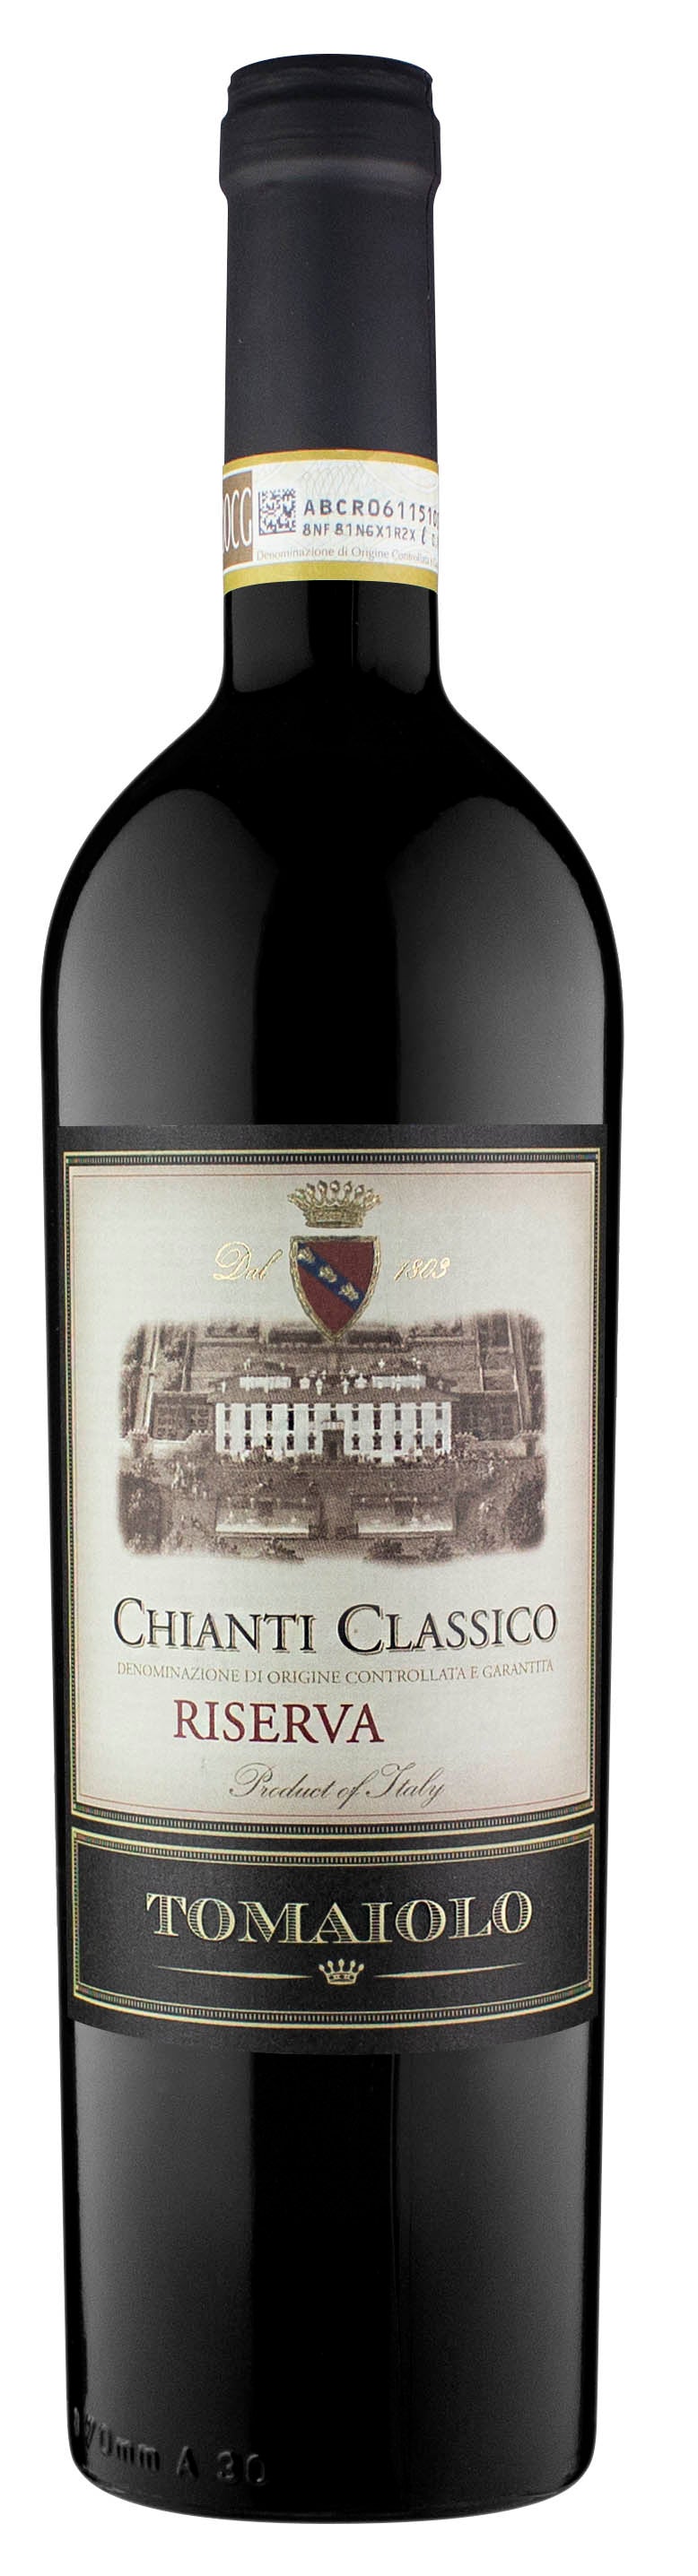 TOMAIOLO CHIANTI CLASSICO RISERVA 2016 - Bk Wine Depot Corp